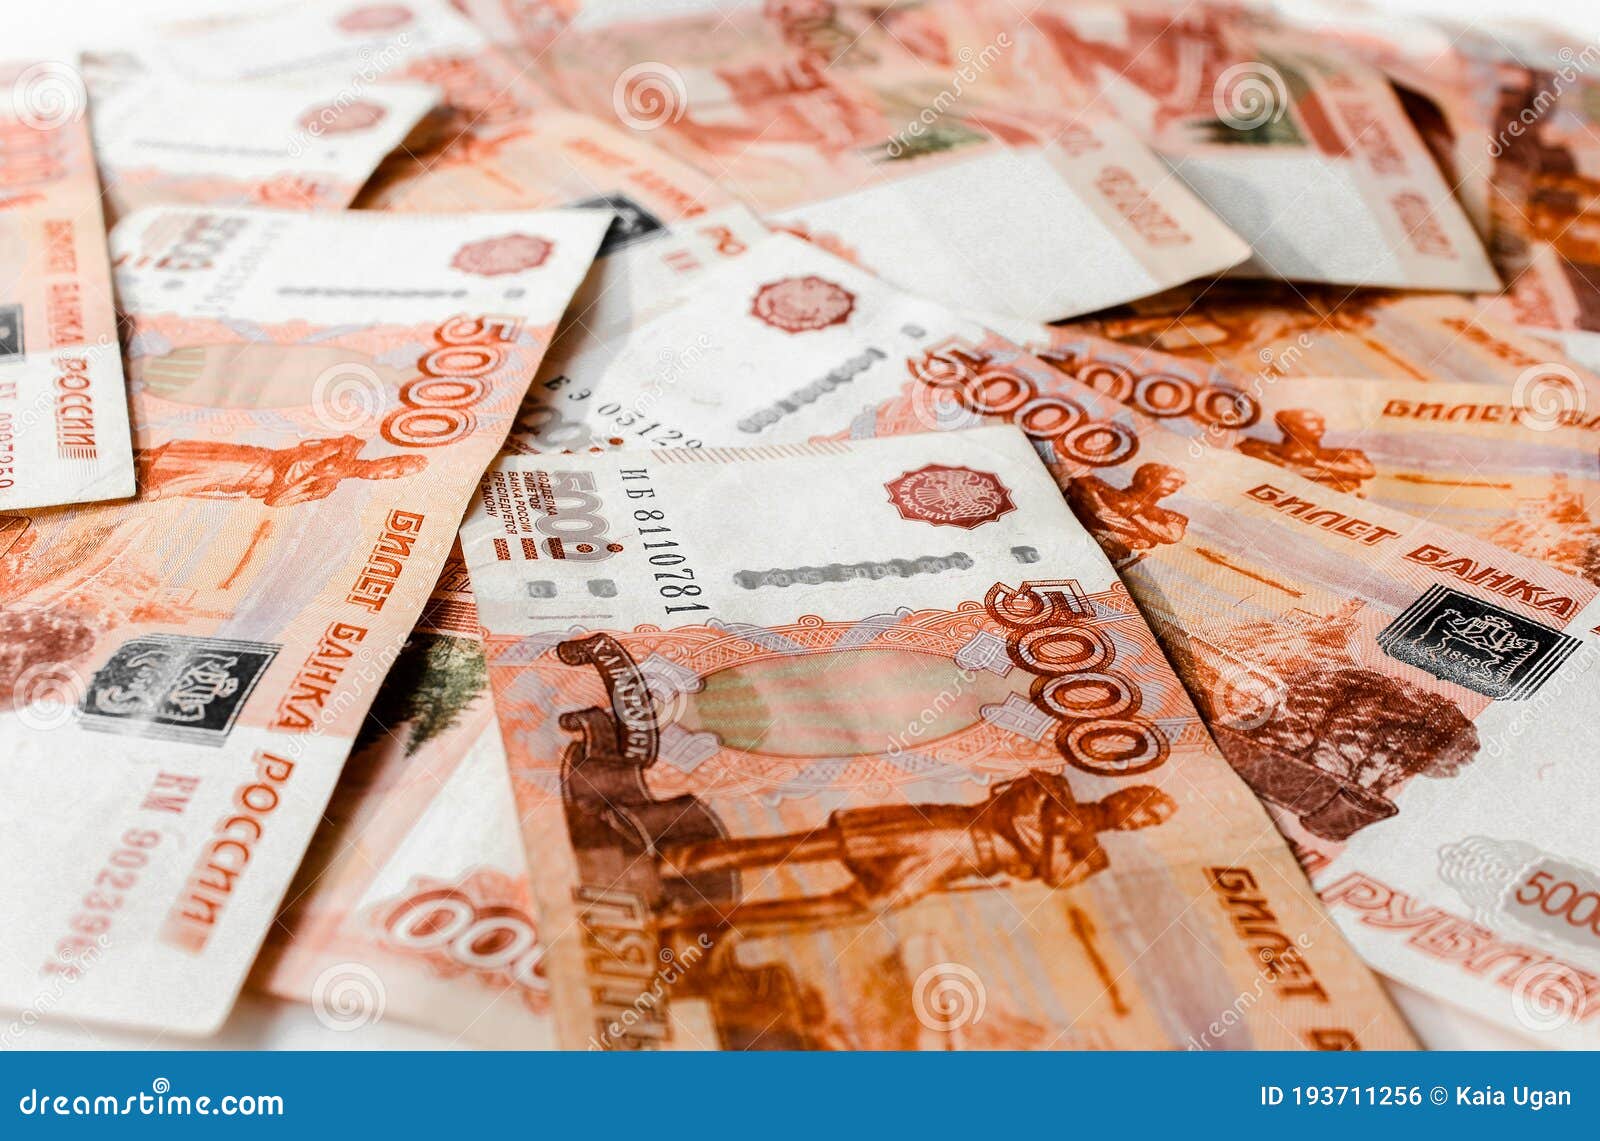 5000 рубль в сумах сегодня